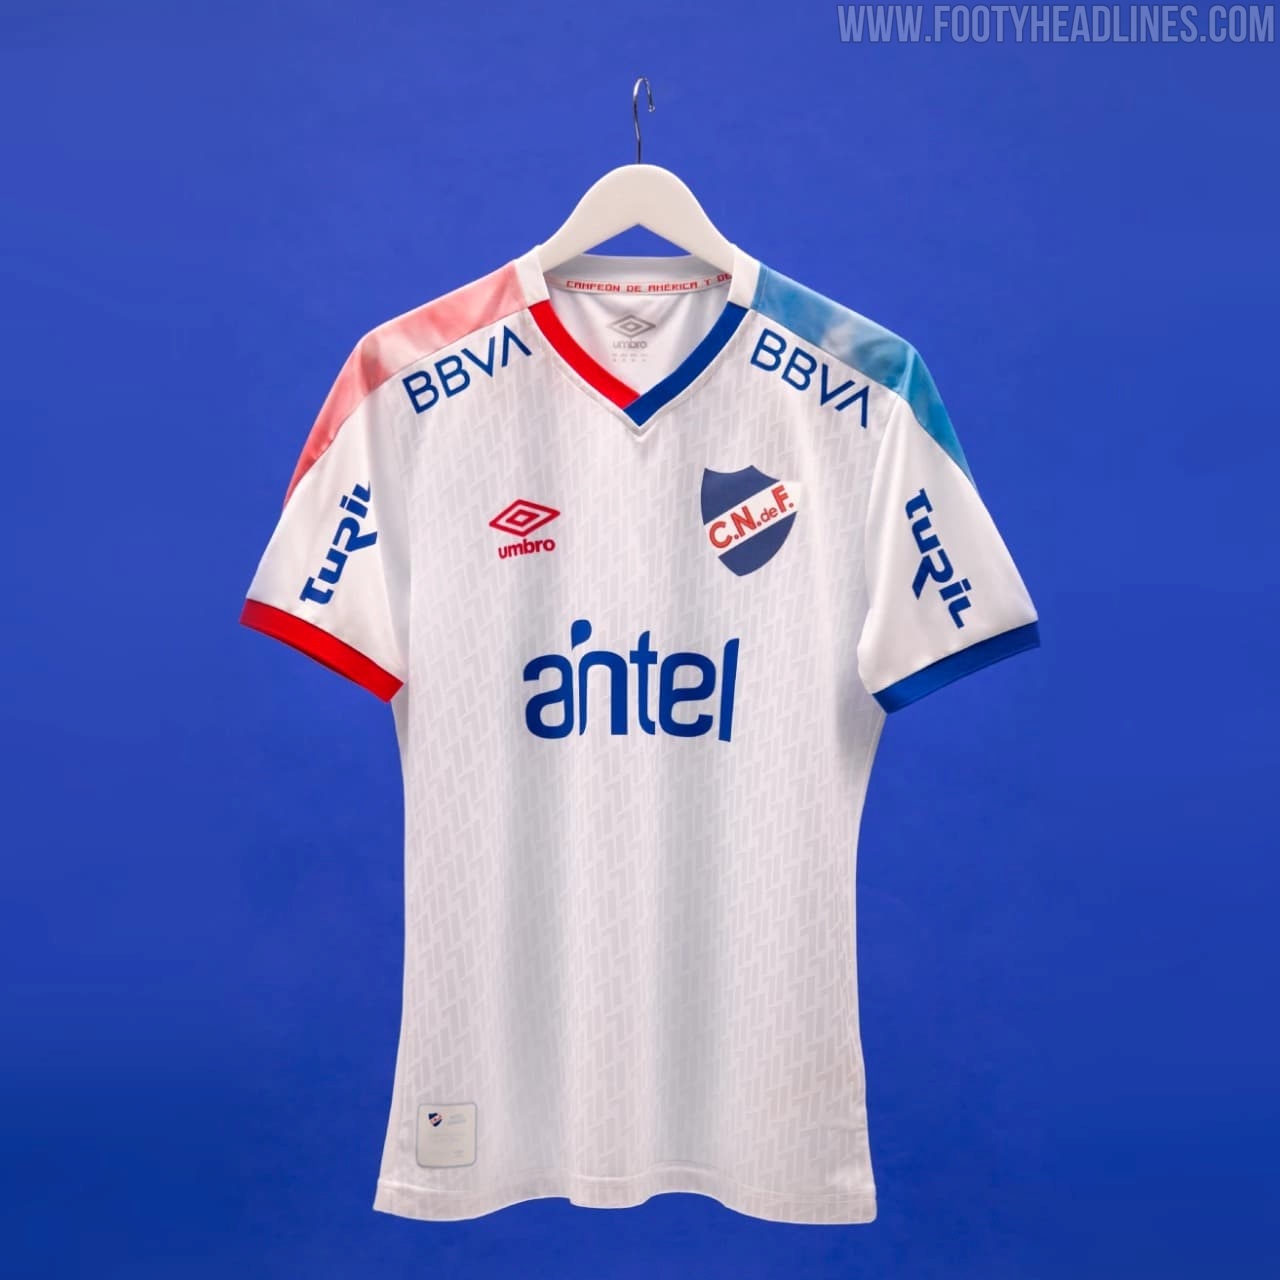 Club Nacional 2021/22 Umbro Third Kit - Football Fashion